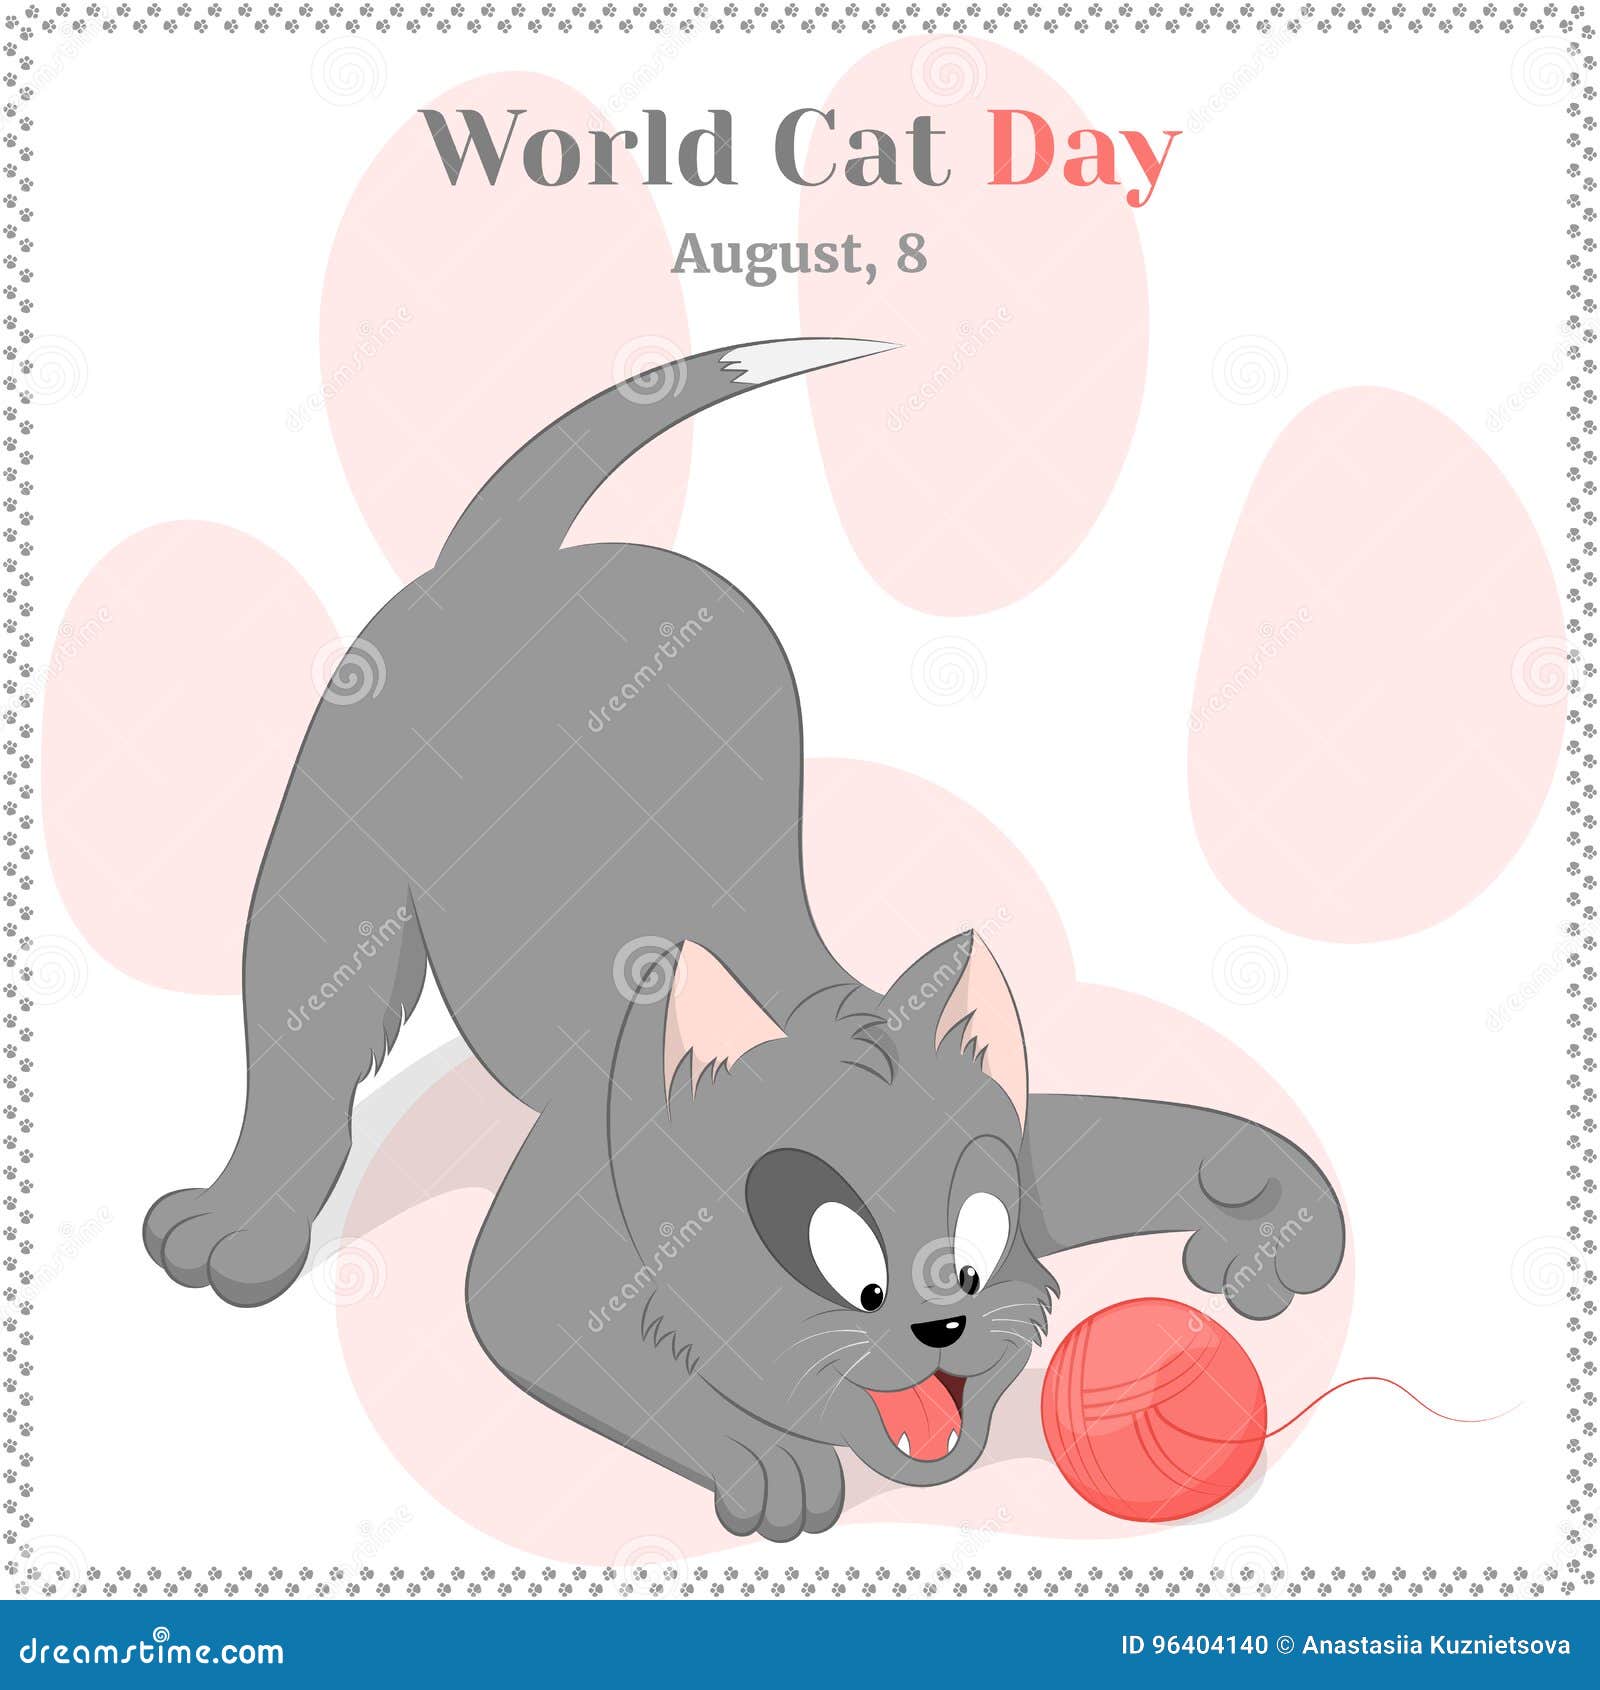 Фанфик дог дэй и кэт нэп. World Cat Day. World Cat Day 8 August. Cats Day 8. August. World Cat Day Cards.